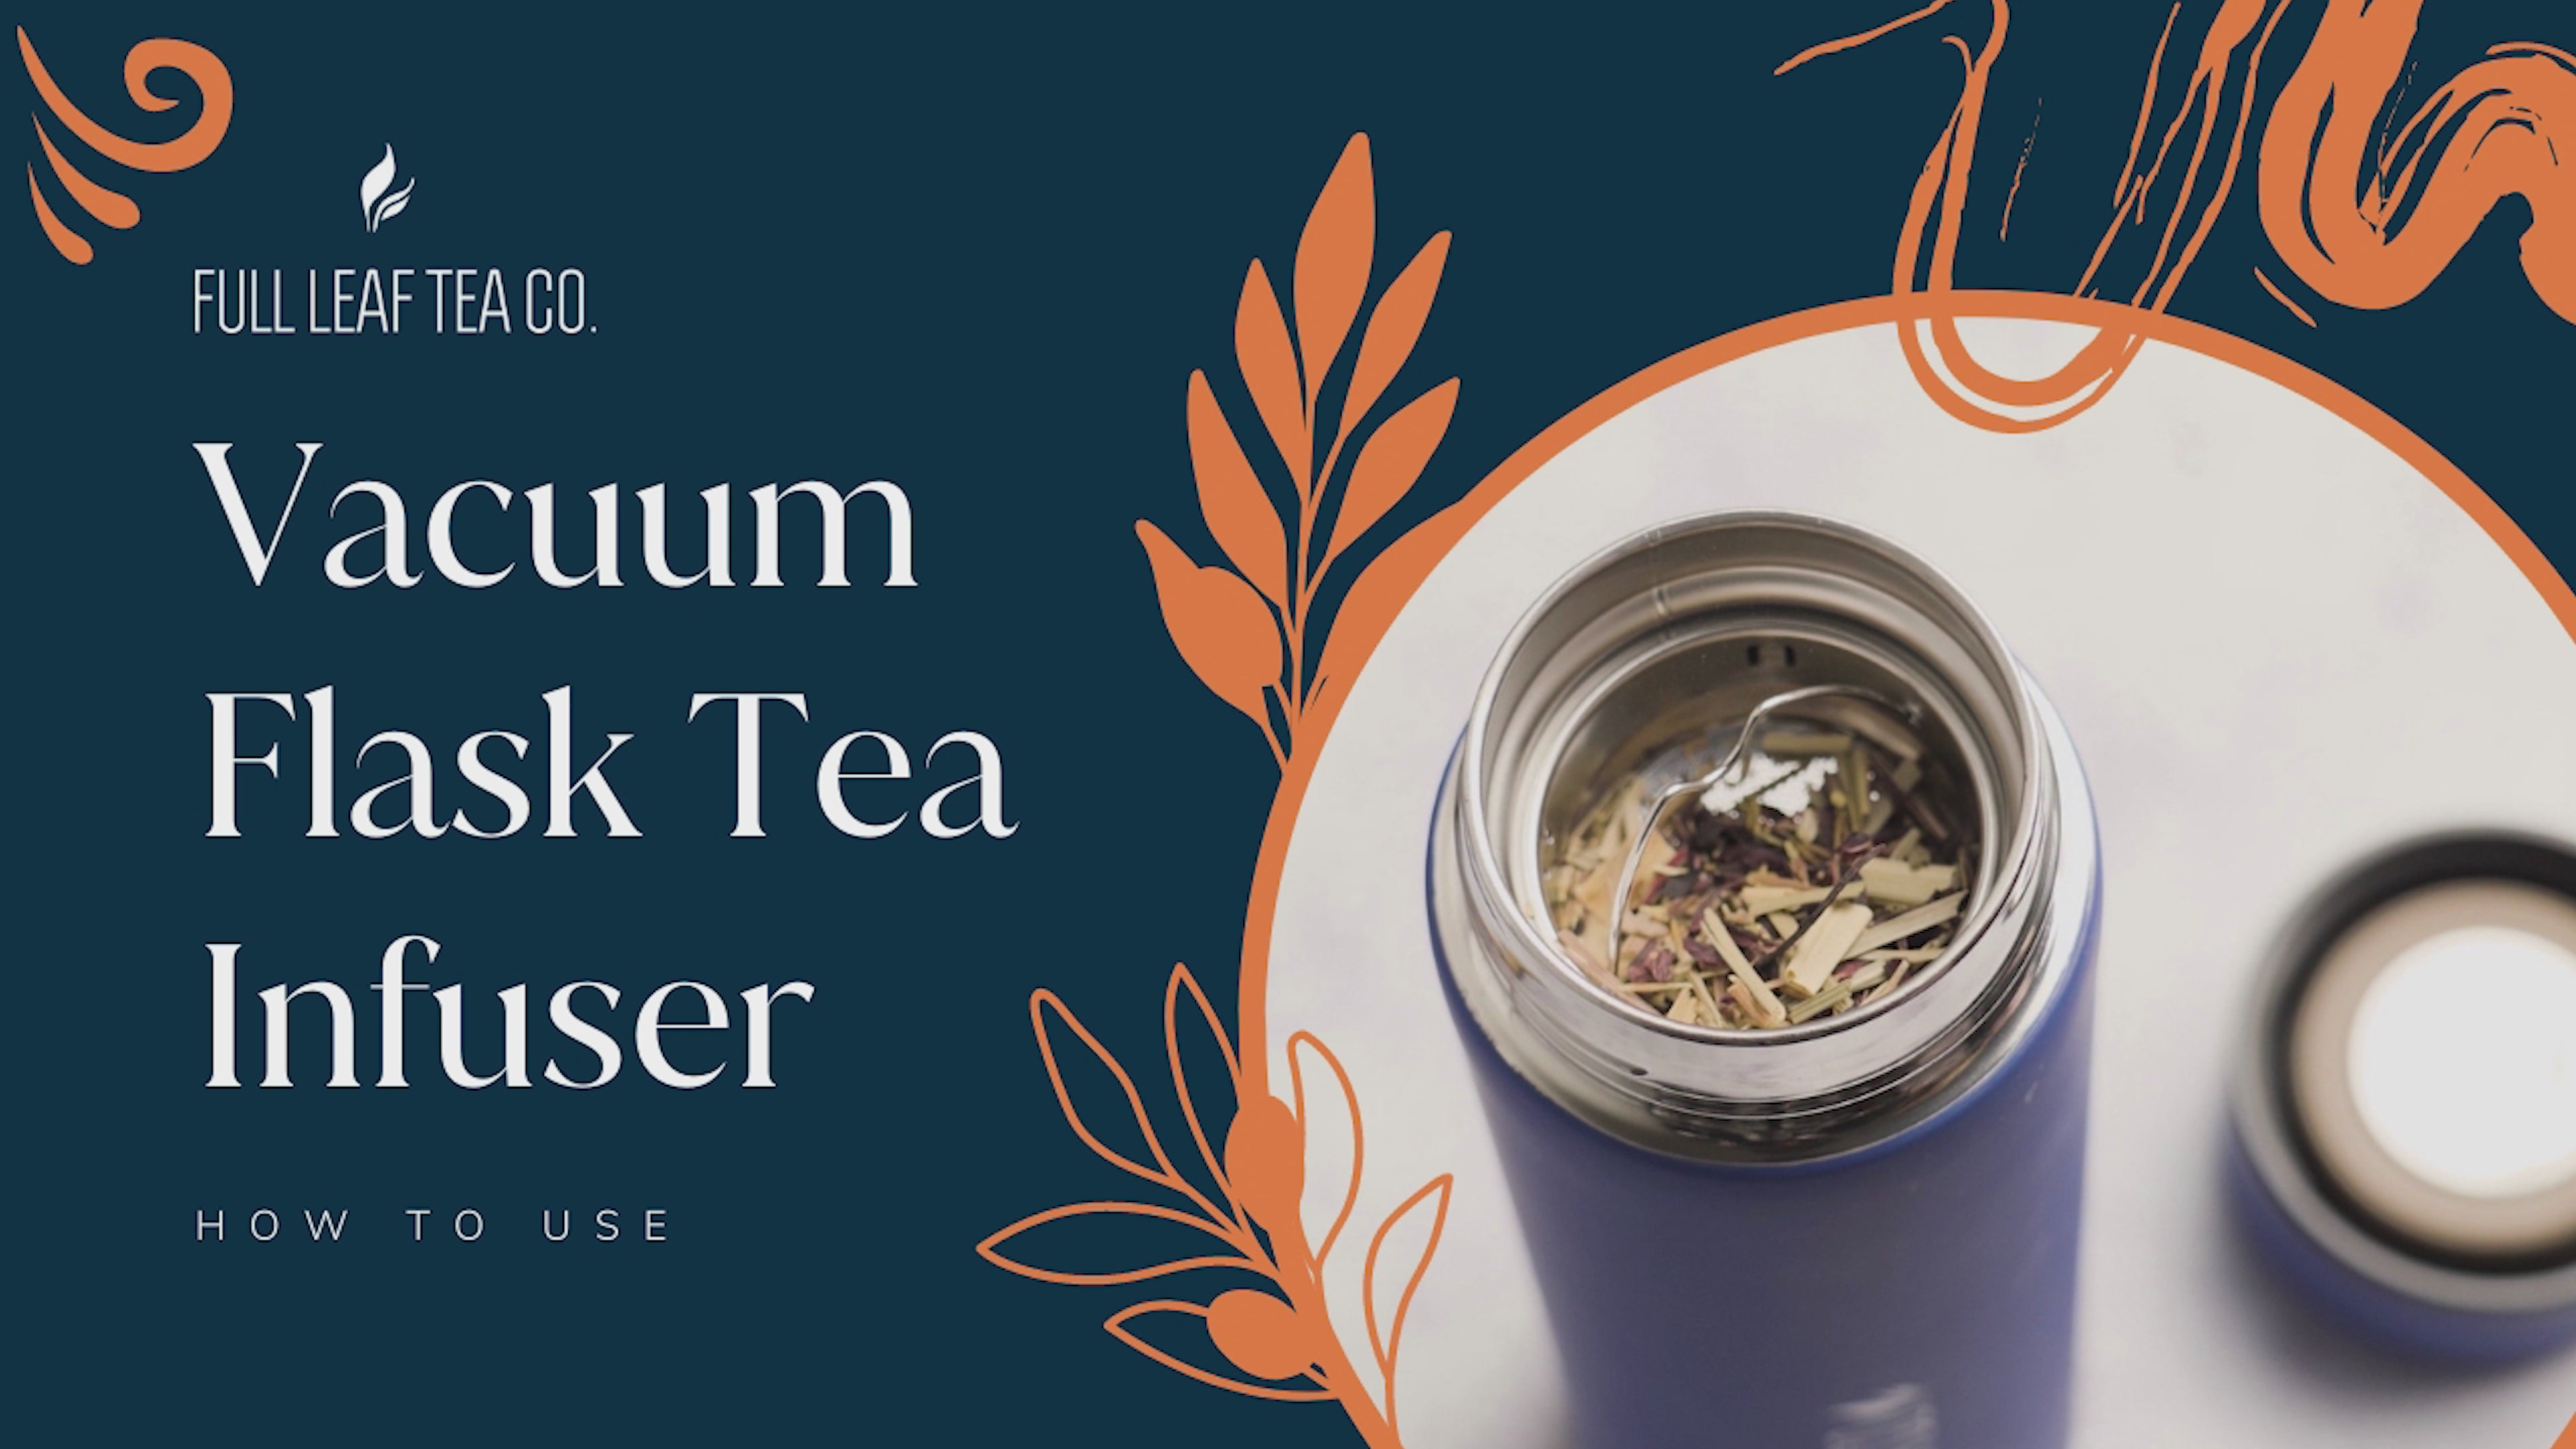 Full Leaf Vacuum Flask Tea Infuser-8